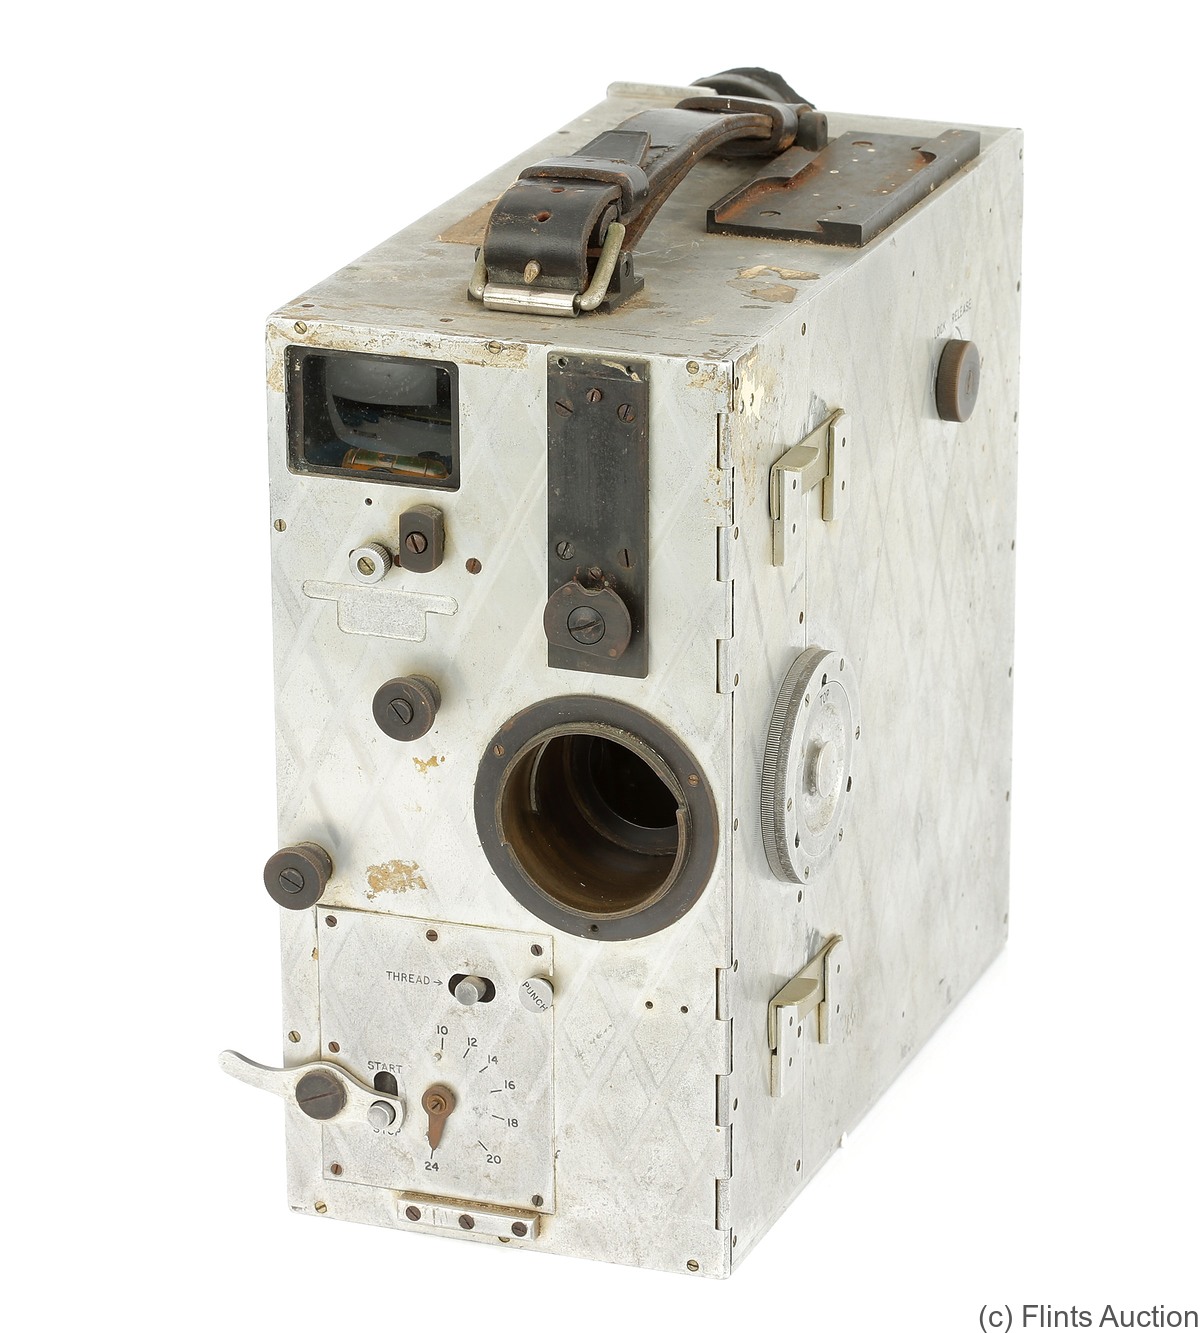 Newman & Sinclair: Auto Kine (Model E) camera